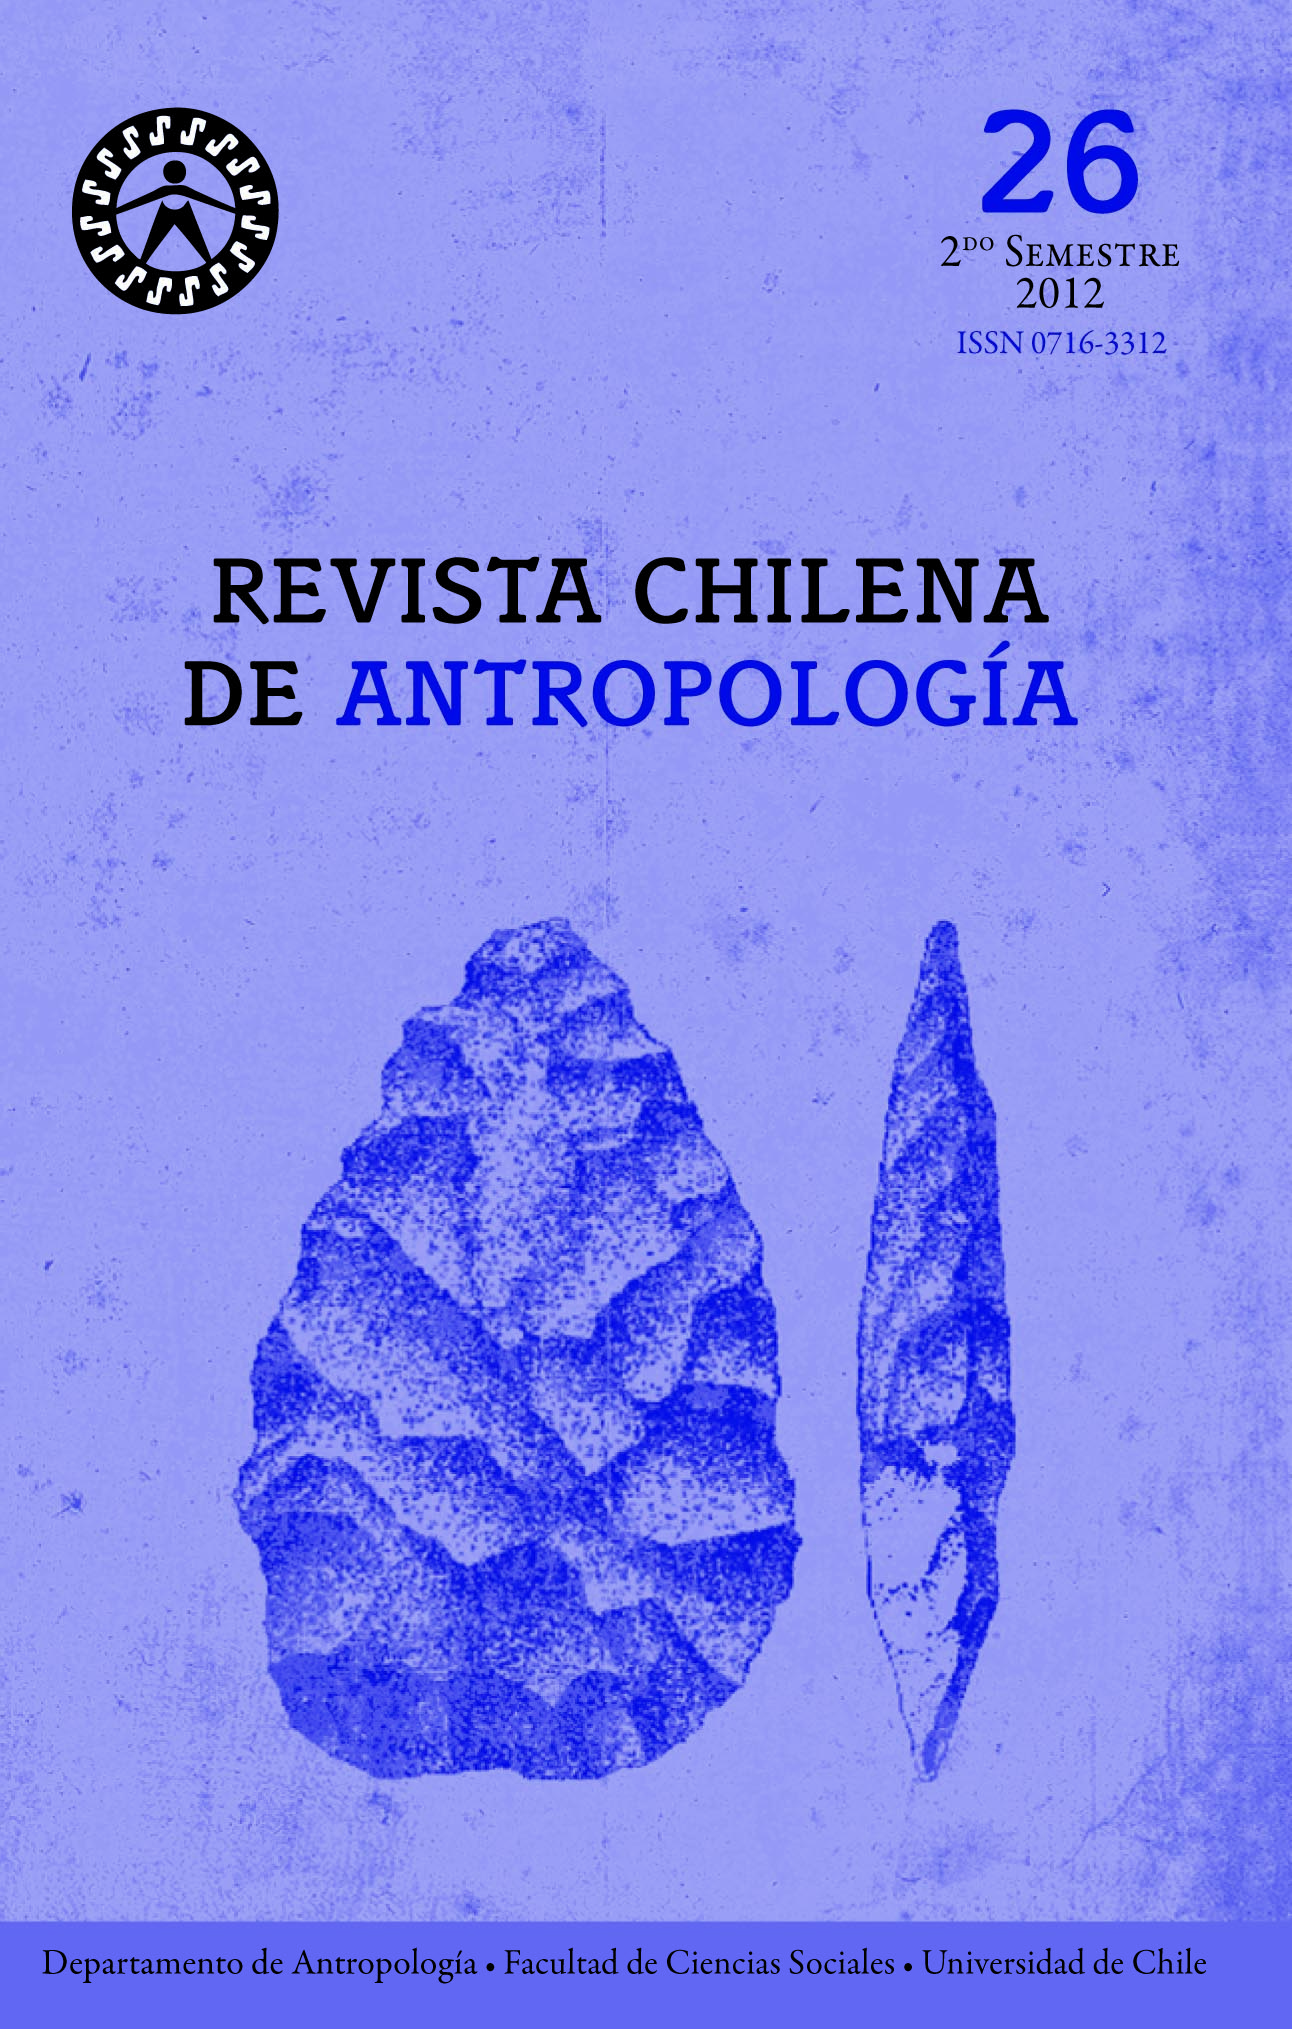 arte rupestre chilena grete pdf